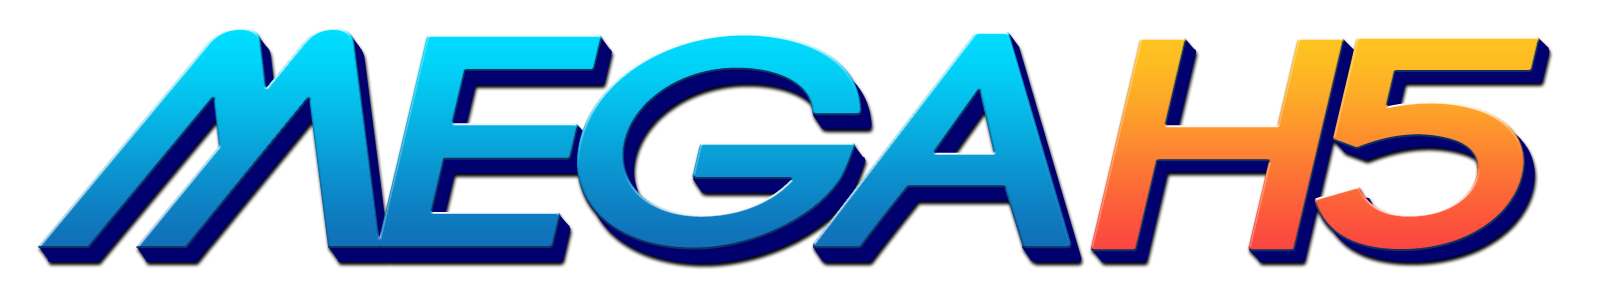 MegaH5 是其中一家列示在乐游国际GamingSoft供应商数据库里的博彩软件提供商 - 乐游国际GamingSoft